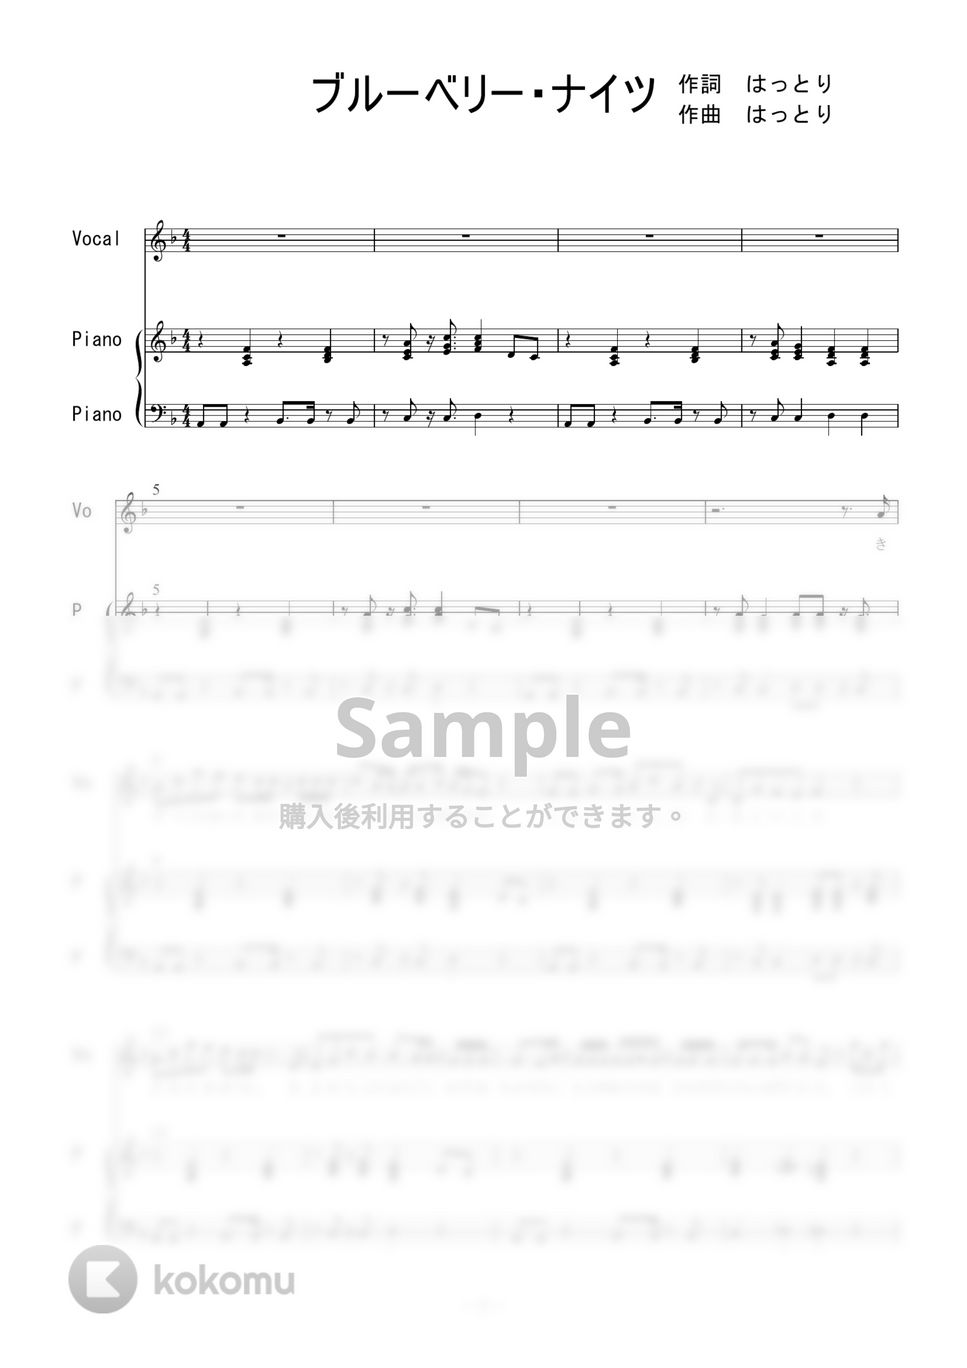 マカロニえんぴつ - ブルーベリー・ナイツ (ピアノ弾き語り) by 二次元楽譜製作所